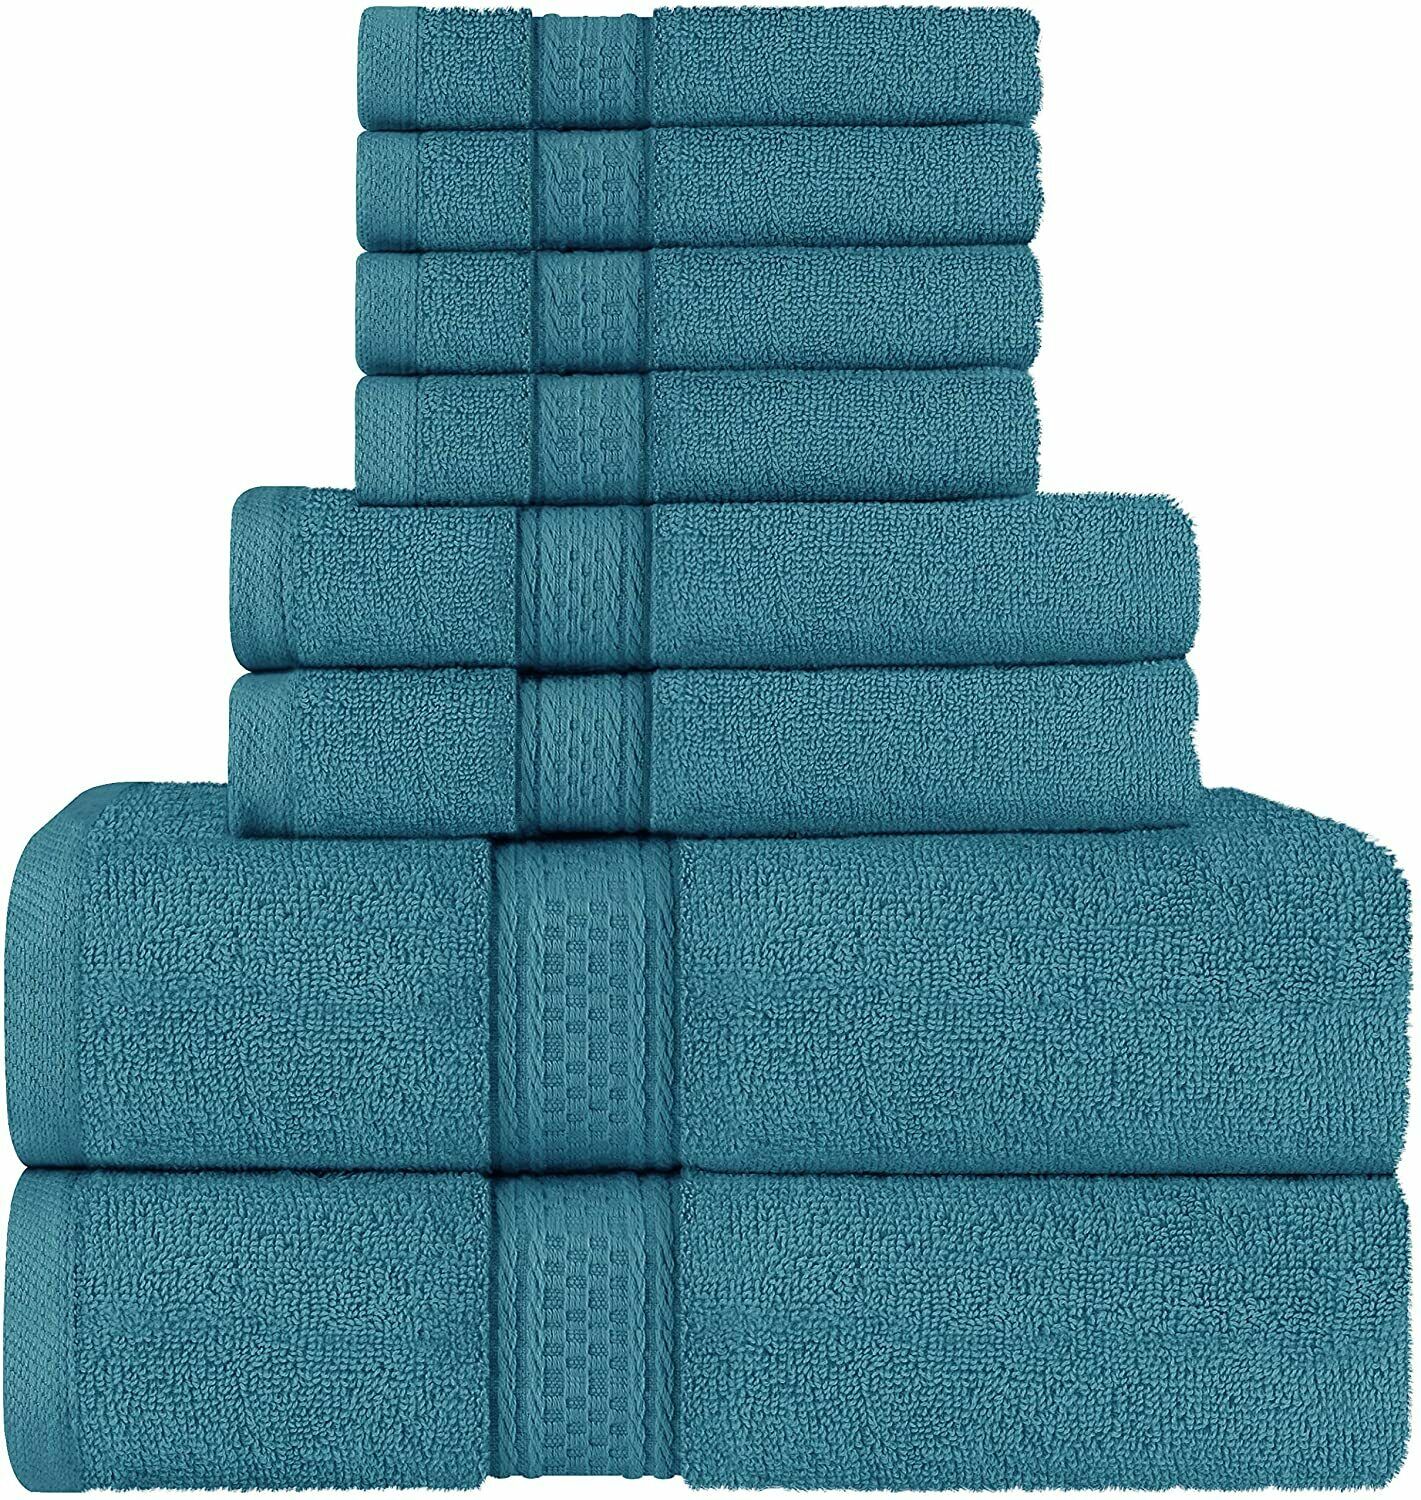 Utopia Towels 600 GSM 8Pc Towel Set 2 Bath Towels 2 Hand Towels 4 Washcloths